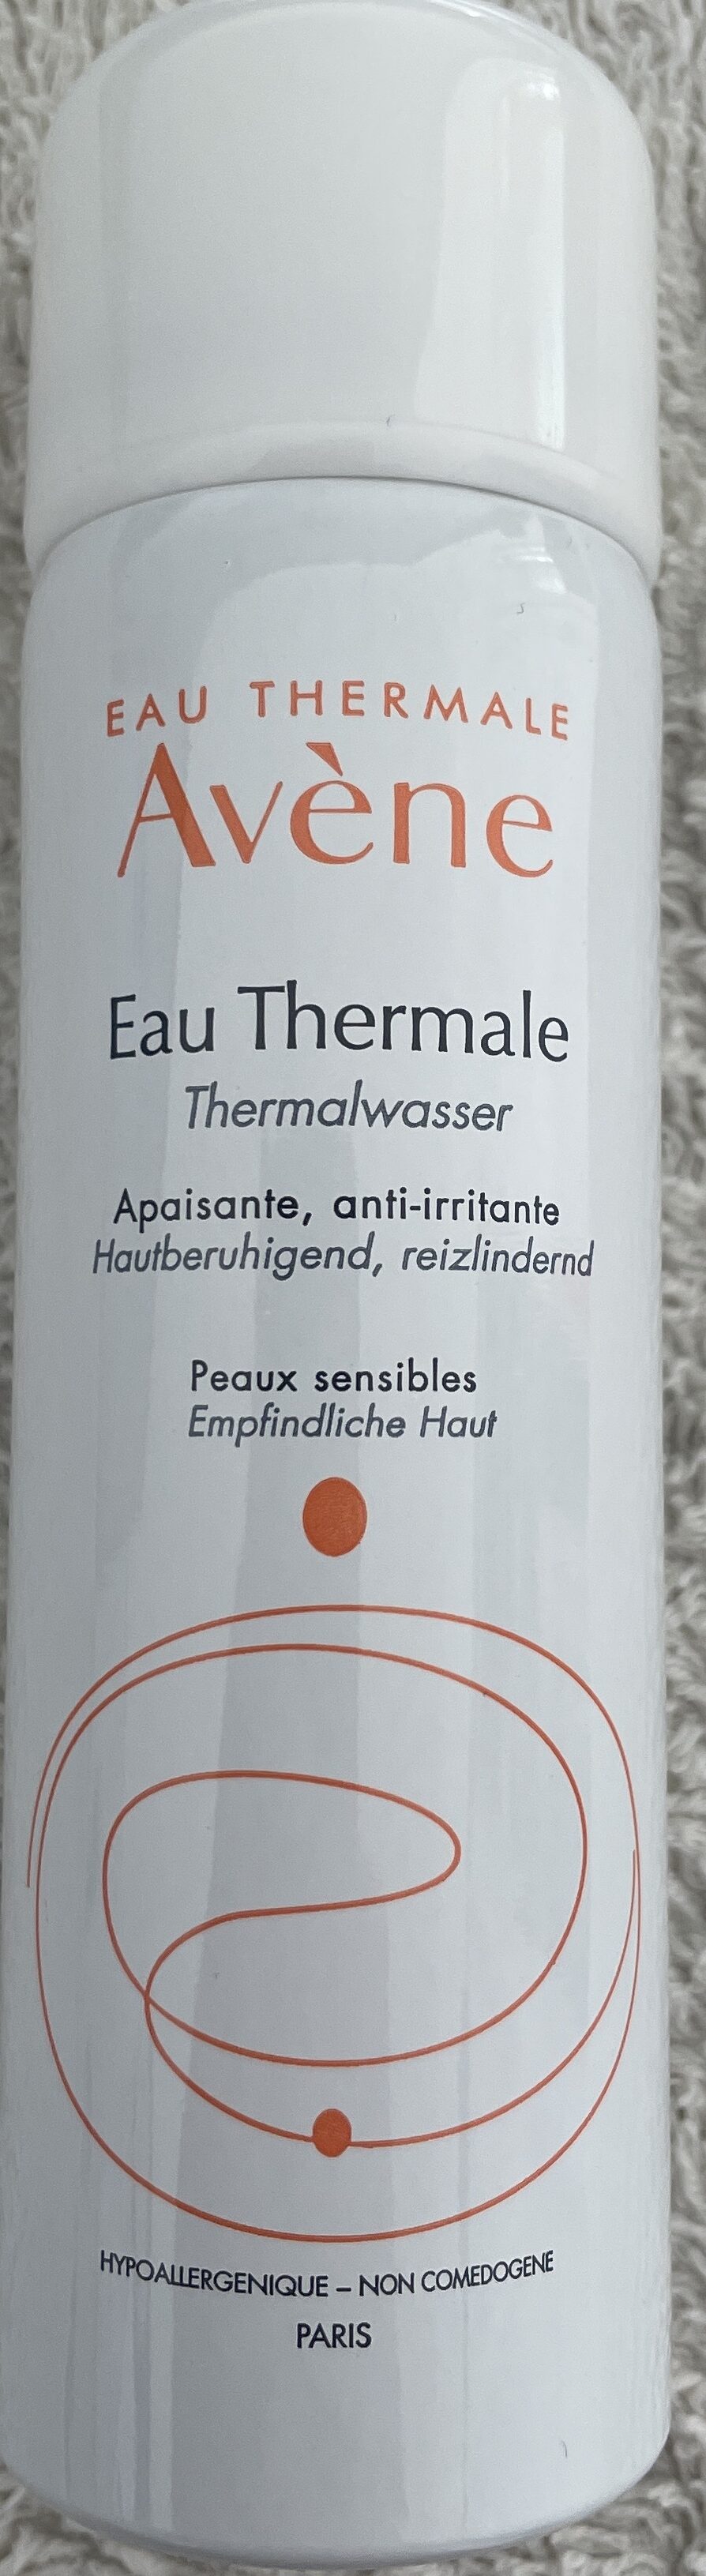 Eau thermale - Produkt - en